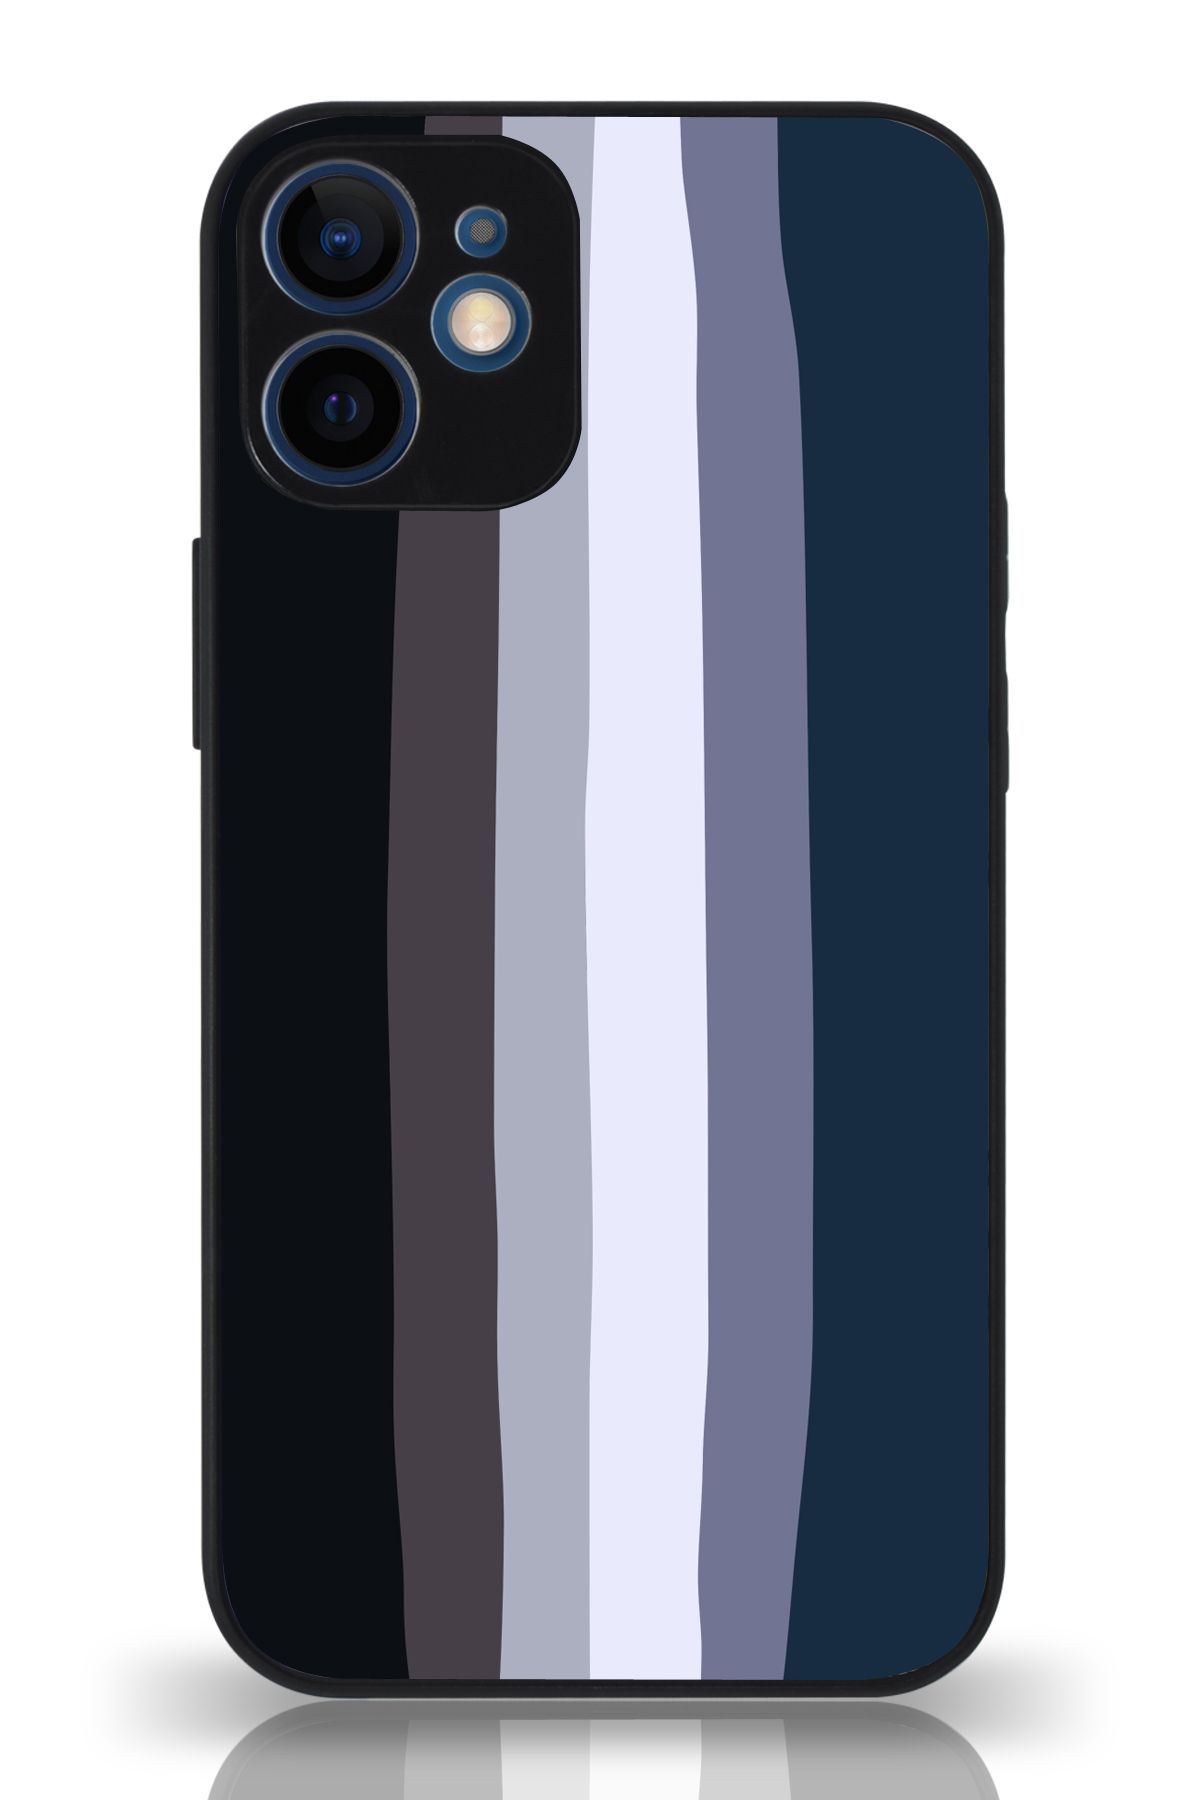 PrintiFy Apple iPhone 12 Kamera Korumalı Mavi Gökkuşağı Desenli Cam Kapak Siyah